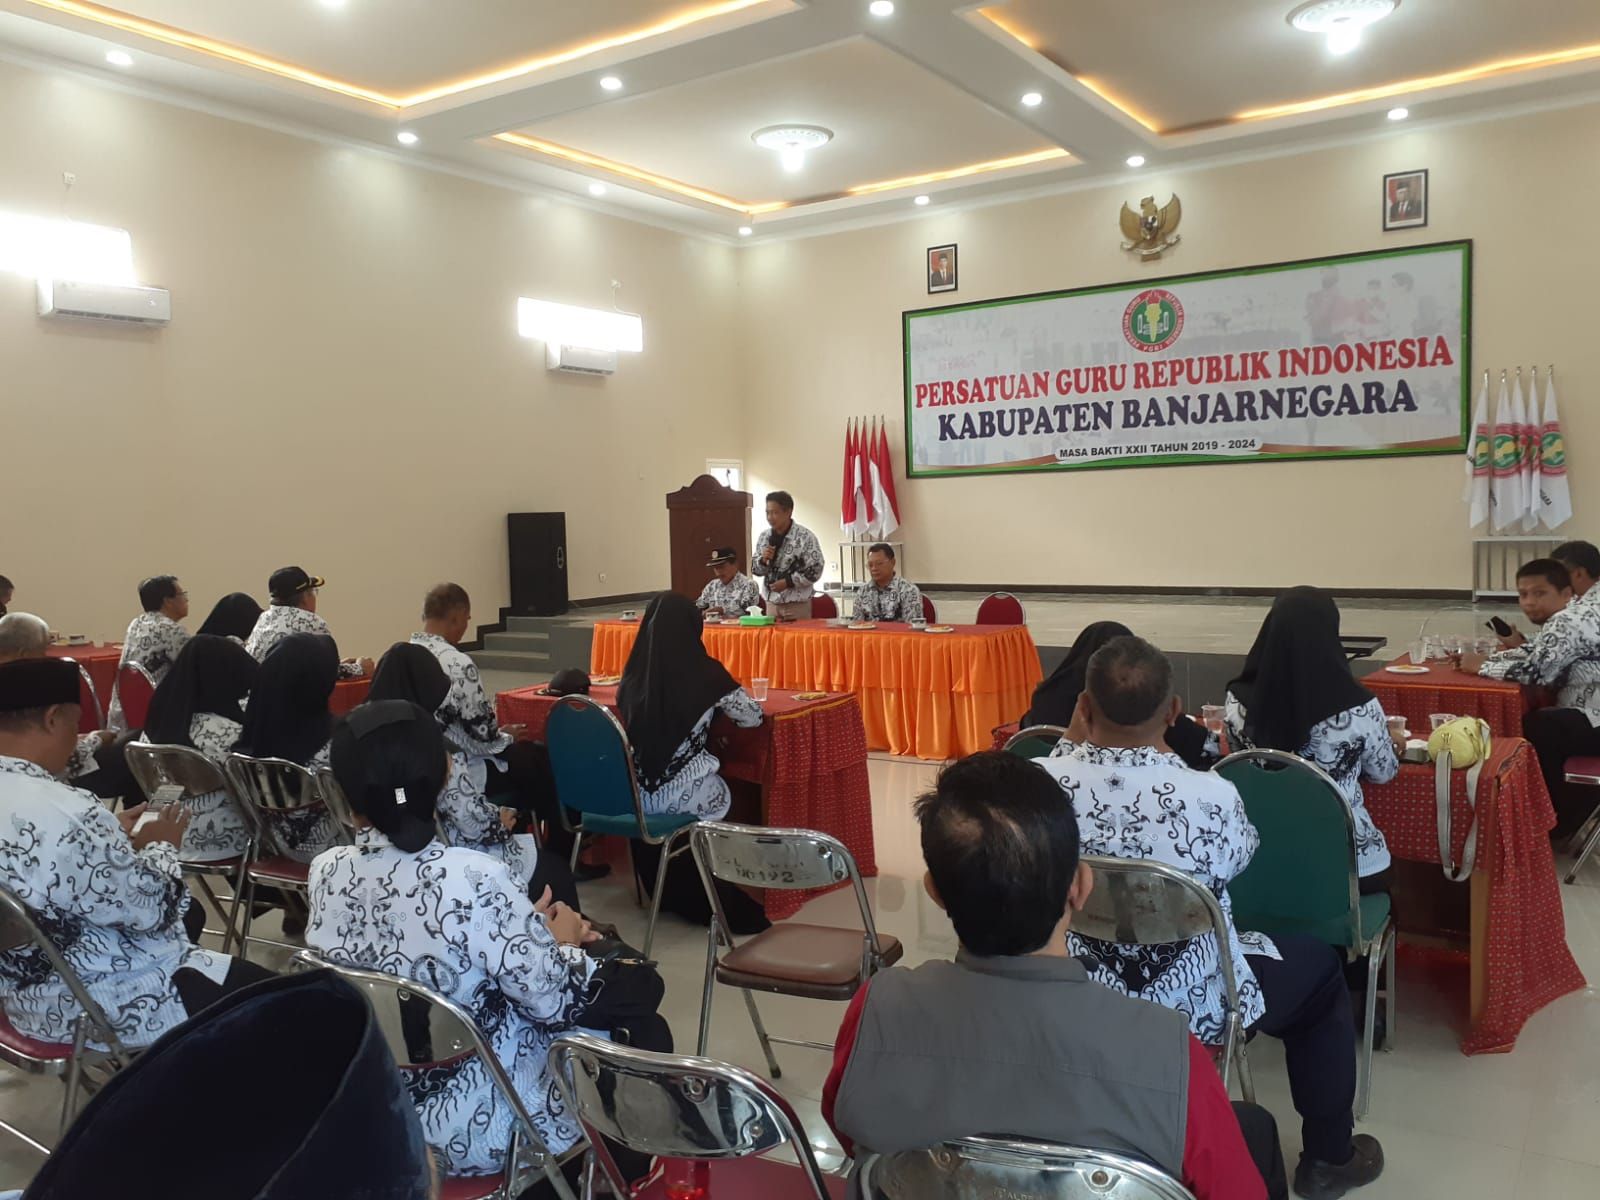 PGRI Wonogiri Ziarah Makam Dr Sulistiyo di Banjarnegara, Noor Tamami: di Kota Inilah Beliau Lahir